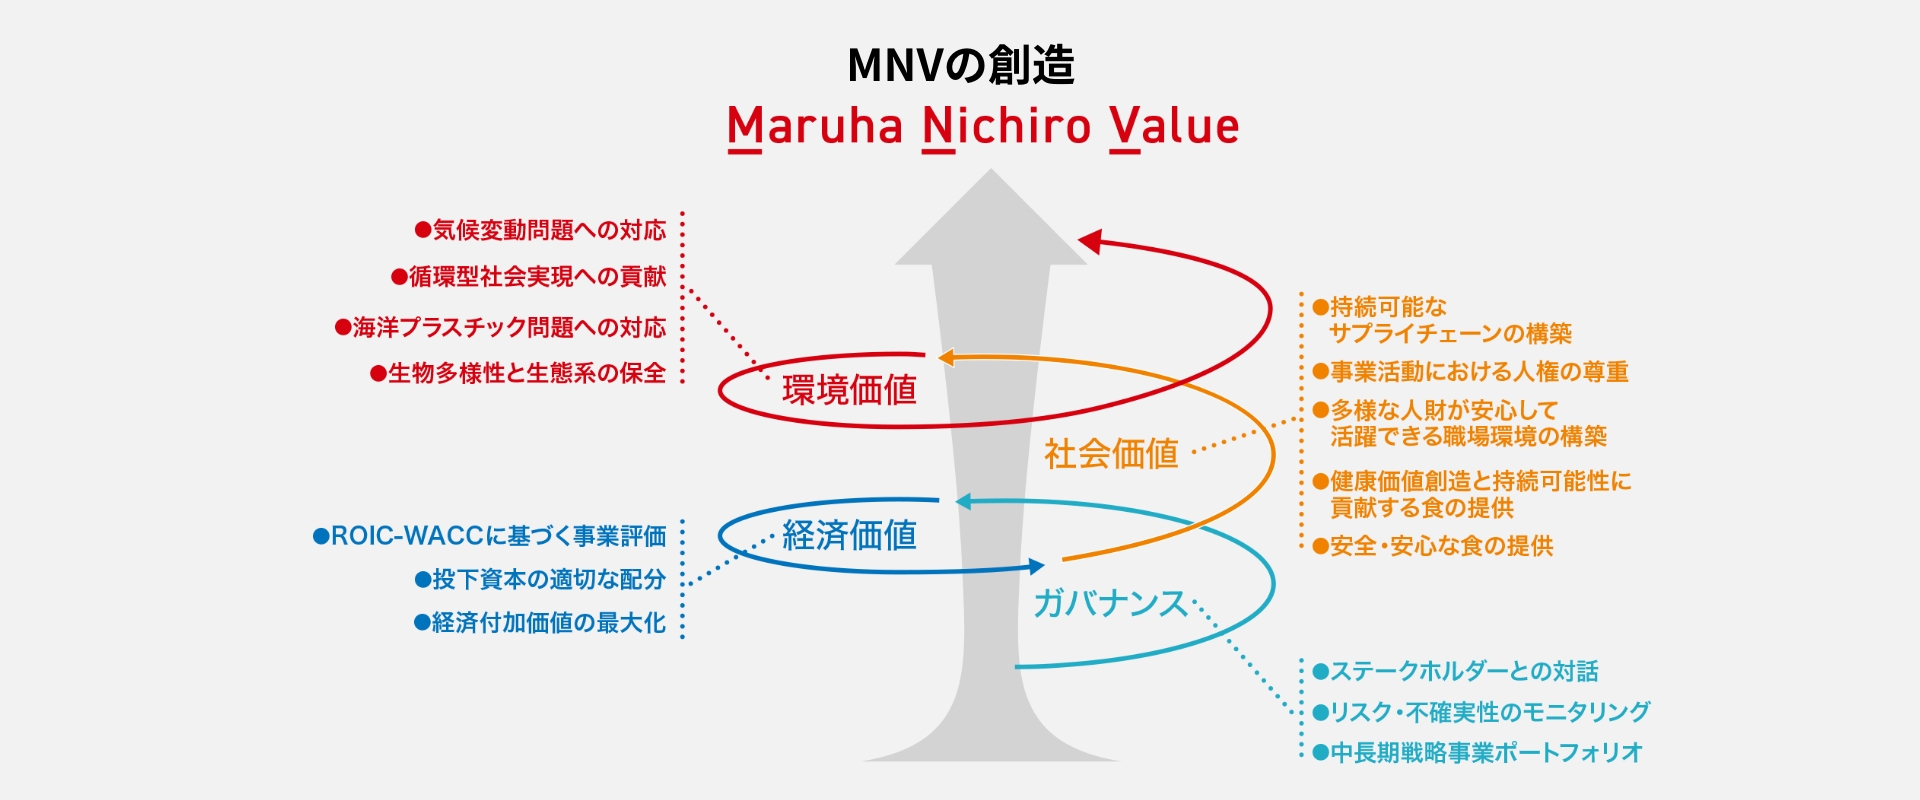 イメージ画像1：マルハニチロが描く、経営戦略とサステナビリティの統合（MNVの創造）